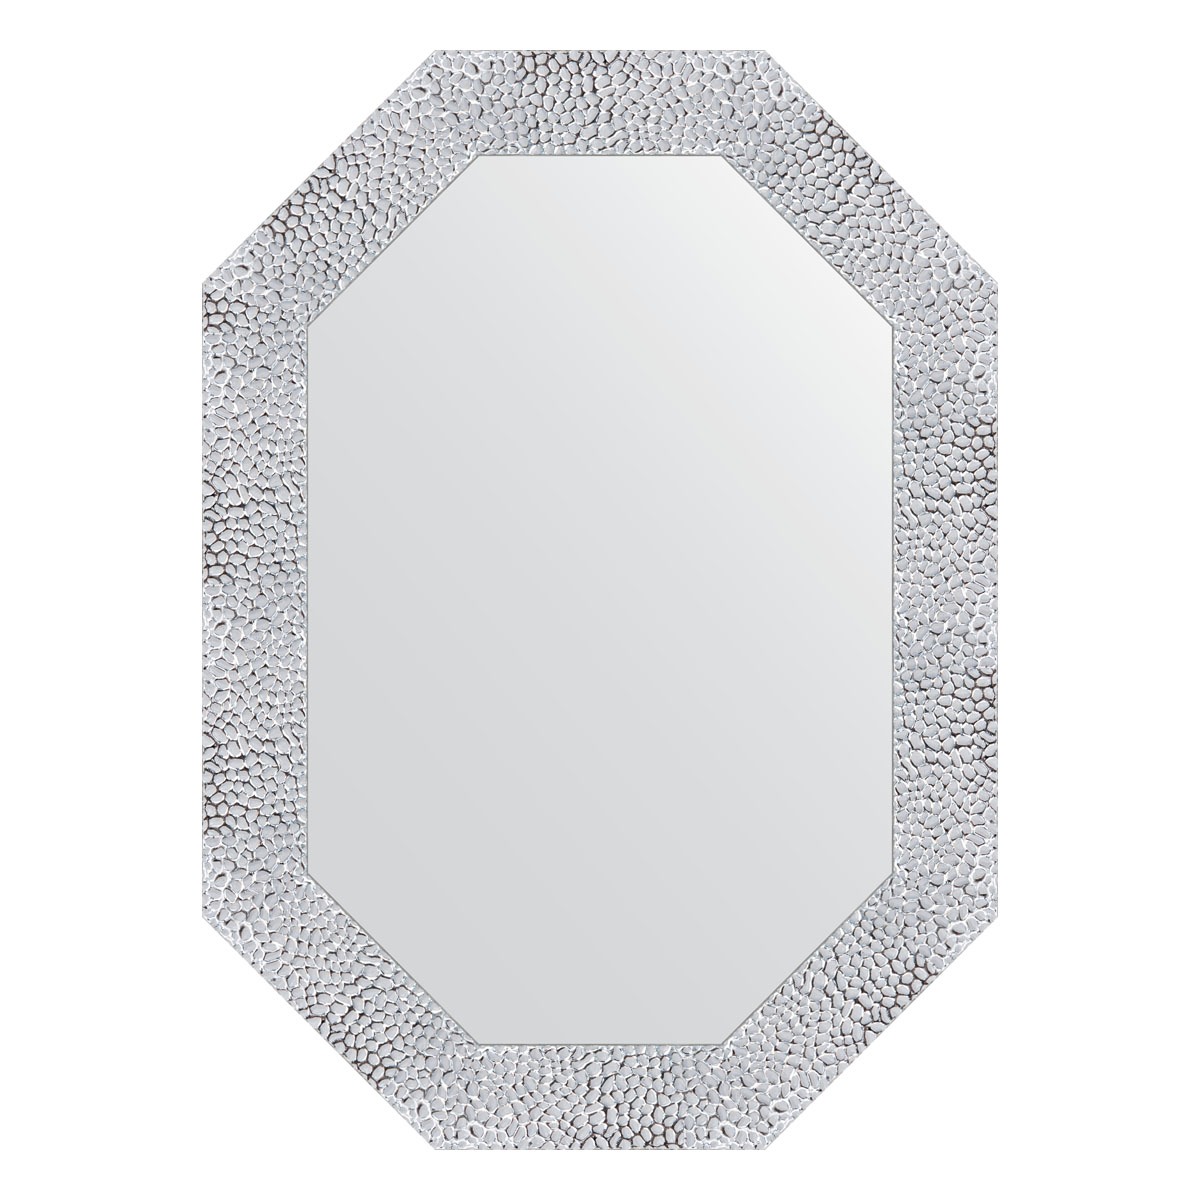 Зеркало в багетной раме Evoform чеканка белая 70 мм 52x72 см зеркало в багетной раме evoform чеканка белая 70 мм 57x72 см